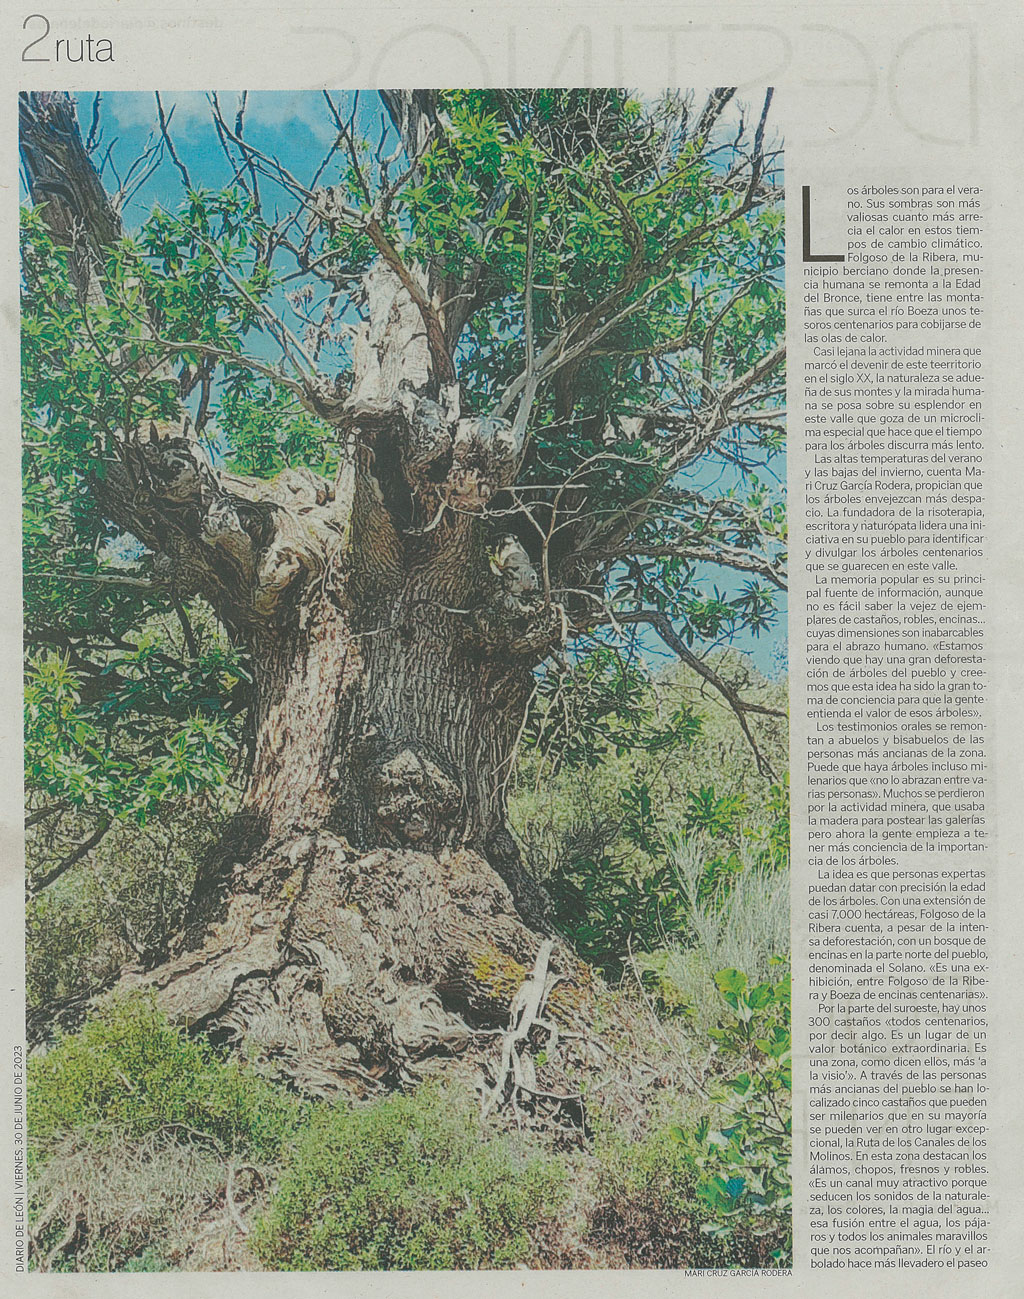 Reportaje en diario de León